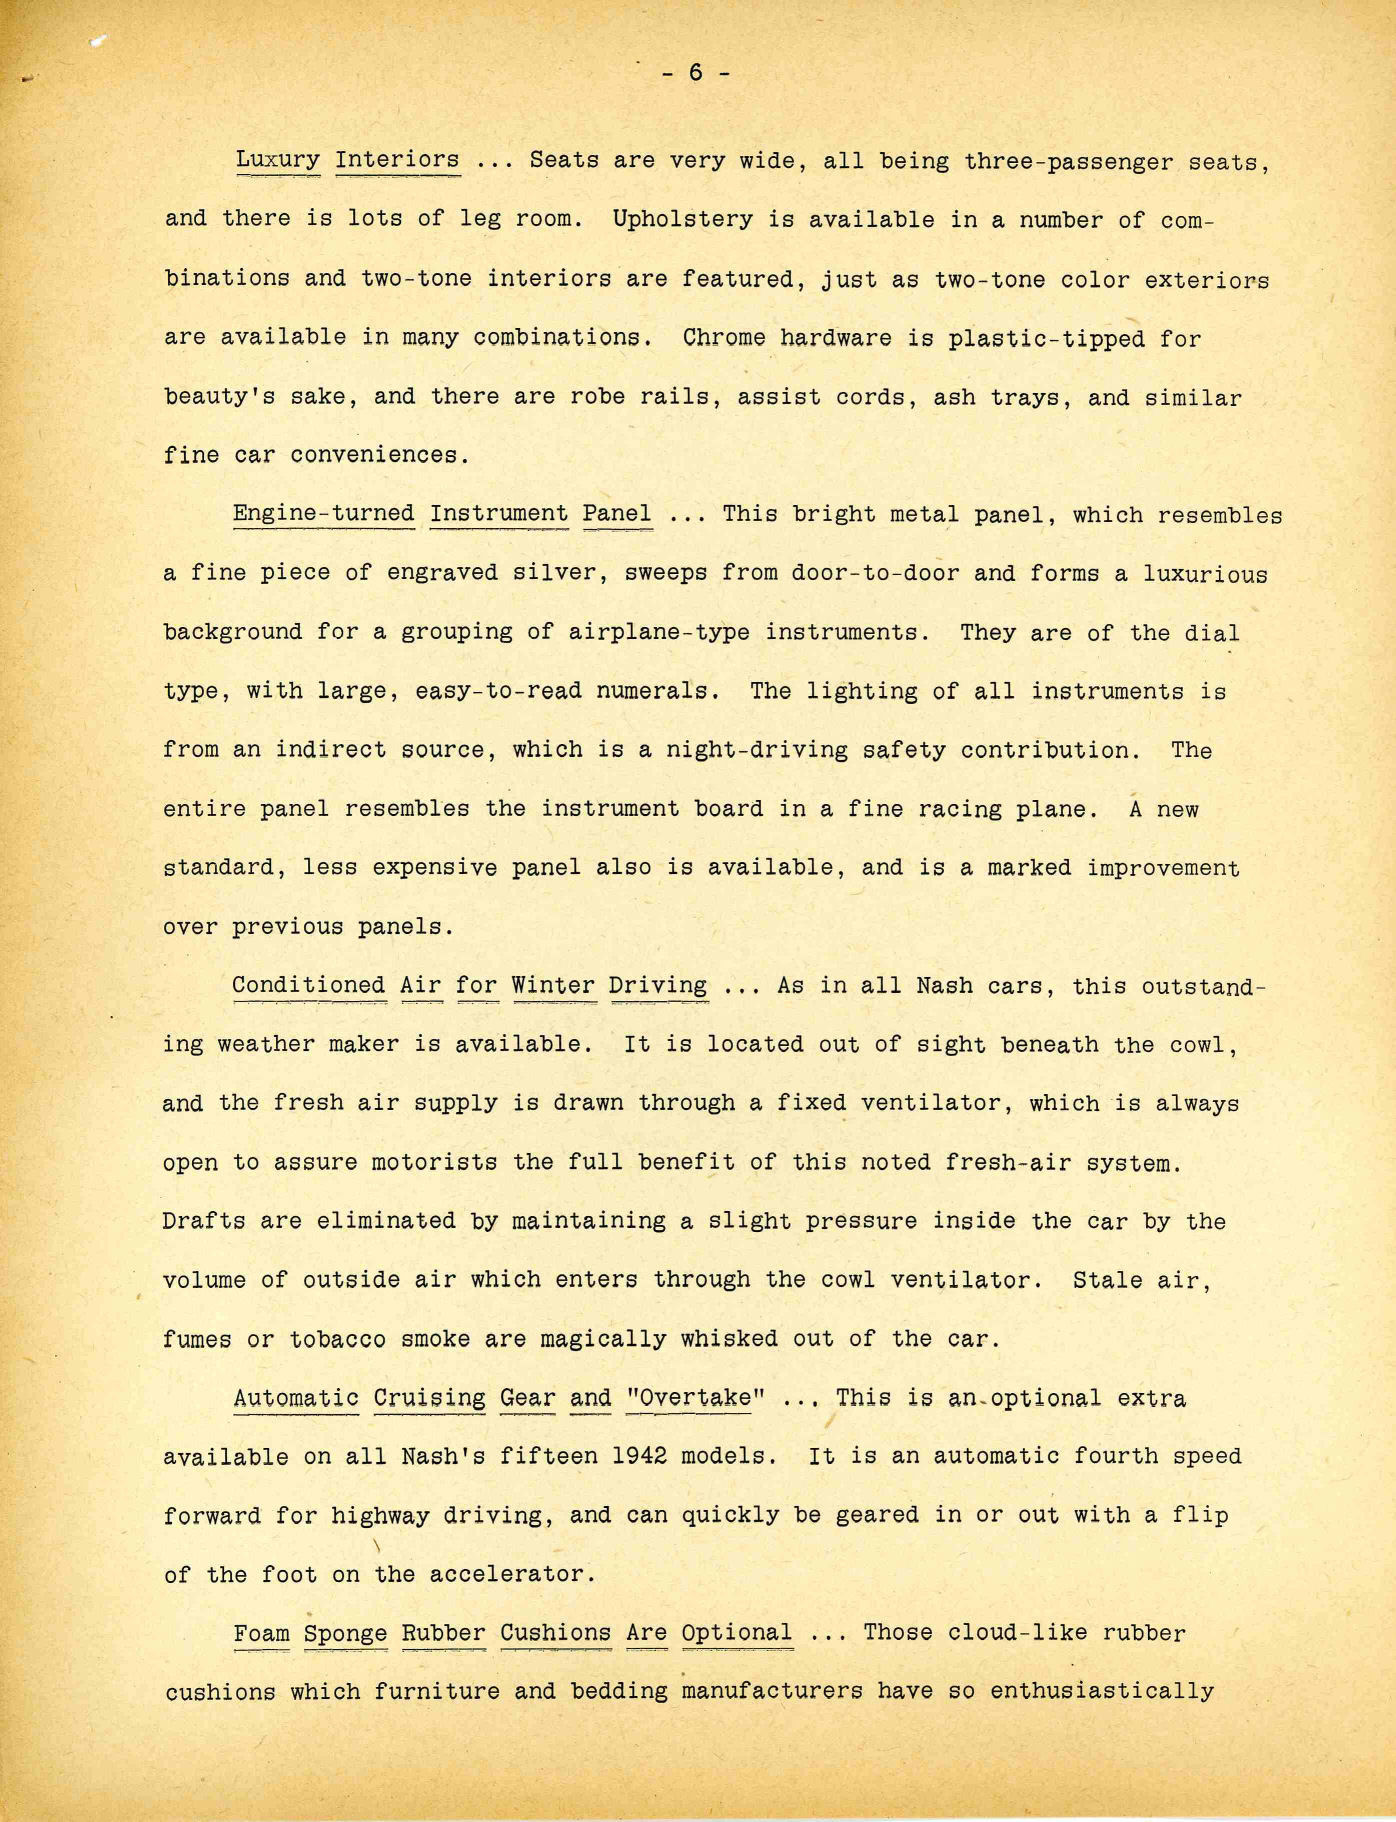 1942 Nash Press Kit Page 43